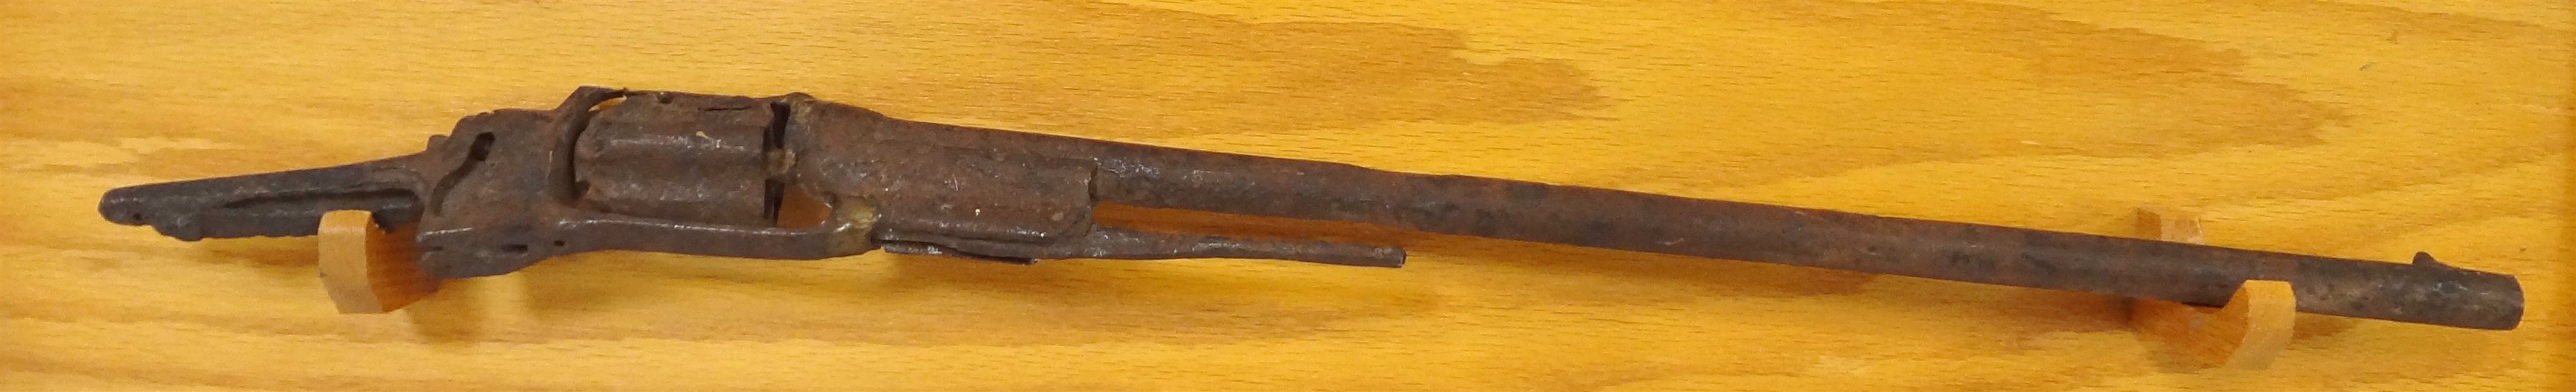 Civil War Dug Colt Rifle With Repair